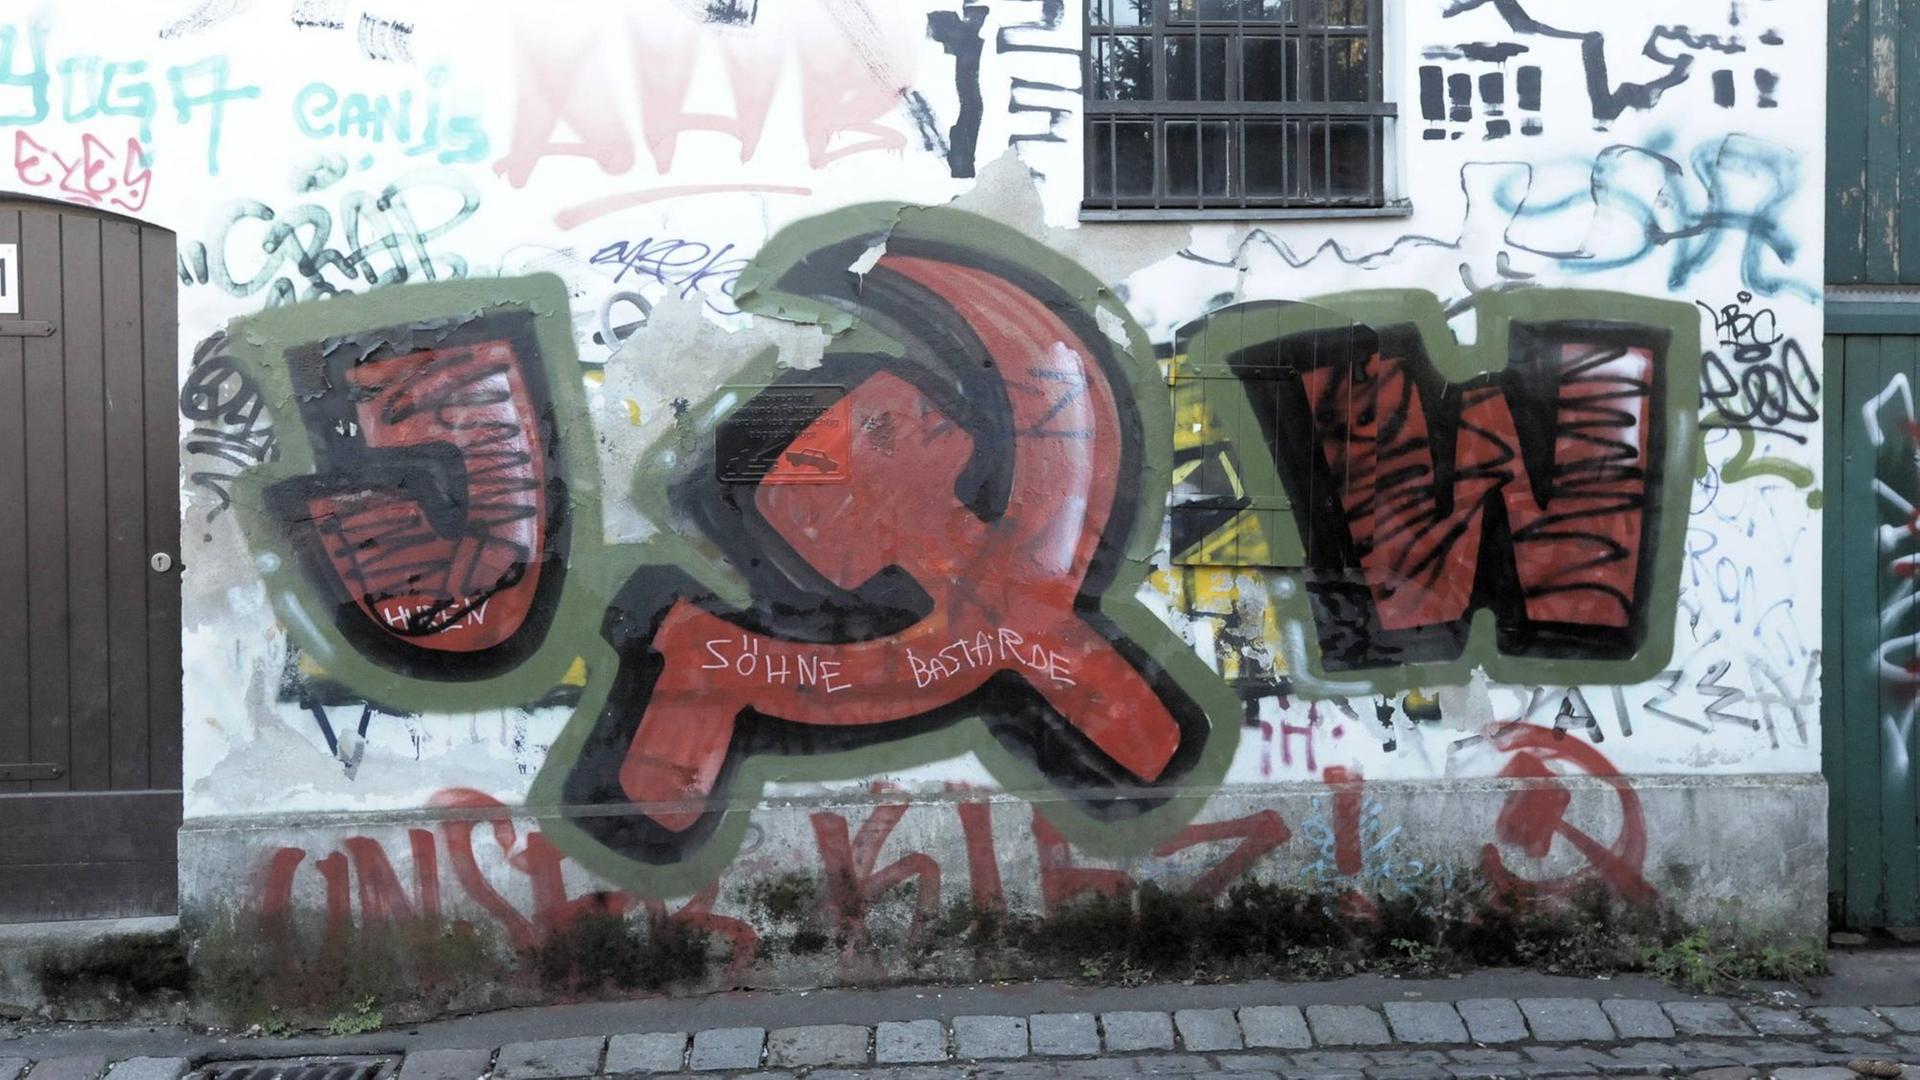 Auf einer Hauswand in der Neuköllner Kirchgasse im Böhmischen Dorf hat jemand ein Graffiti angebracht mit dem Kürzel JW für Jugendwiderstand und dem Symbol Hammer und Sichel.